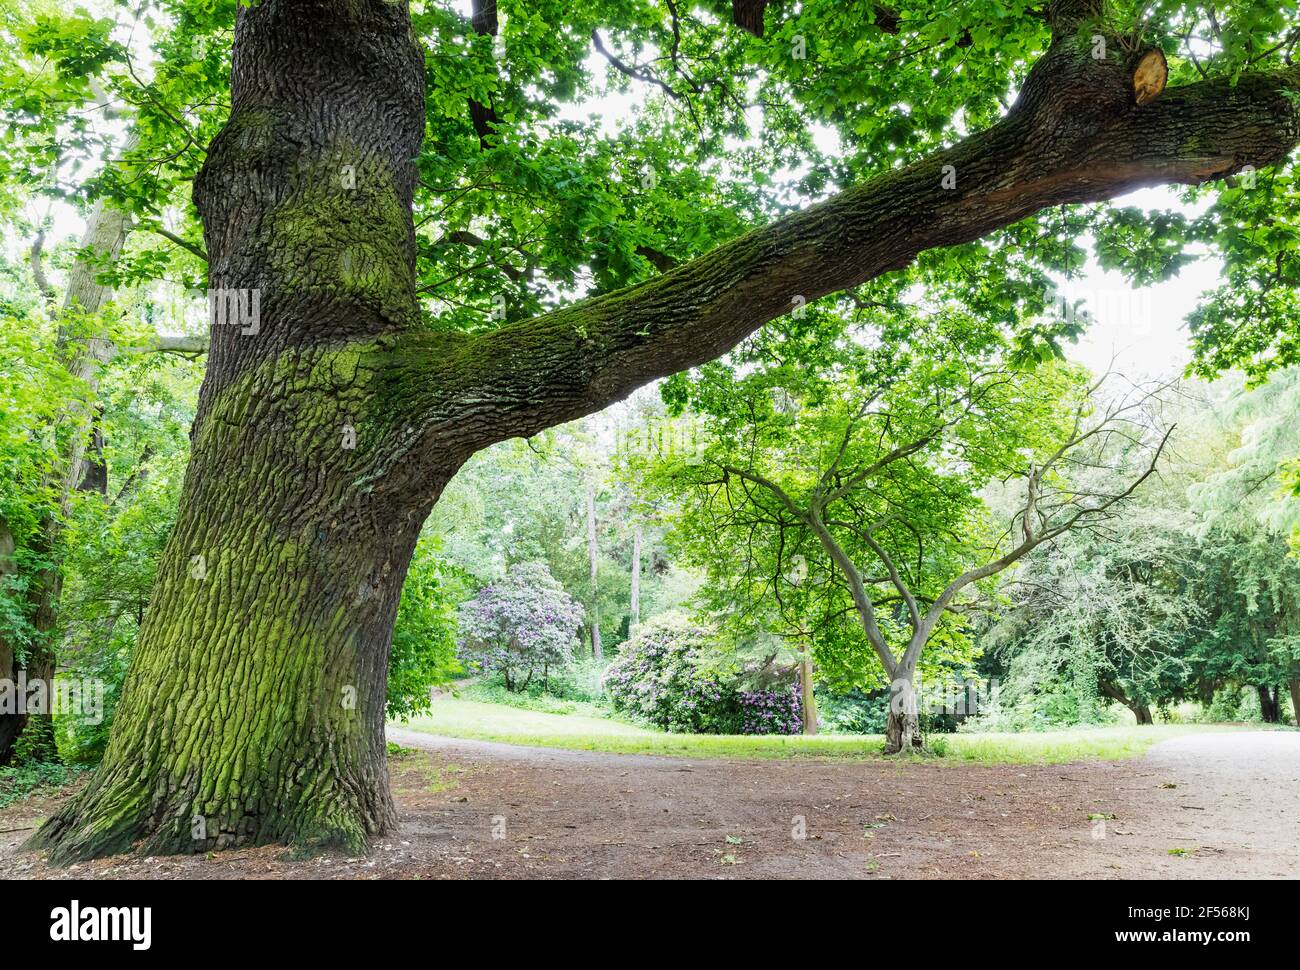 Germany, Saxony, Leipzig, Old oak tree growing in Palmengarten park Stock Photo